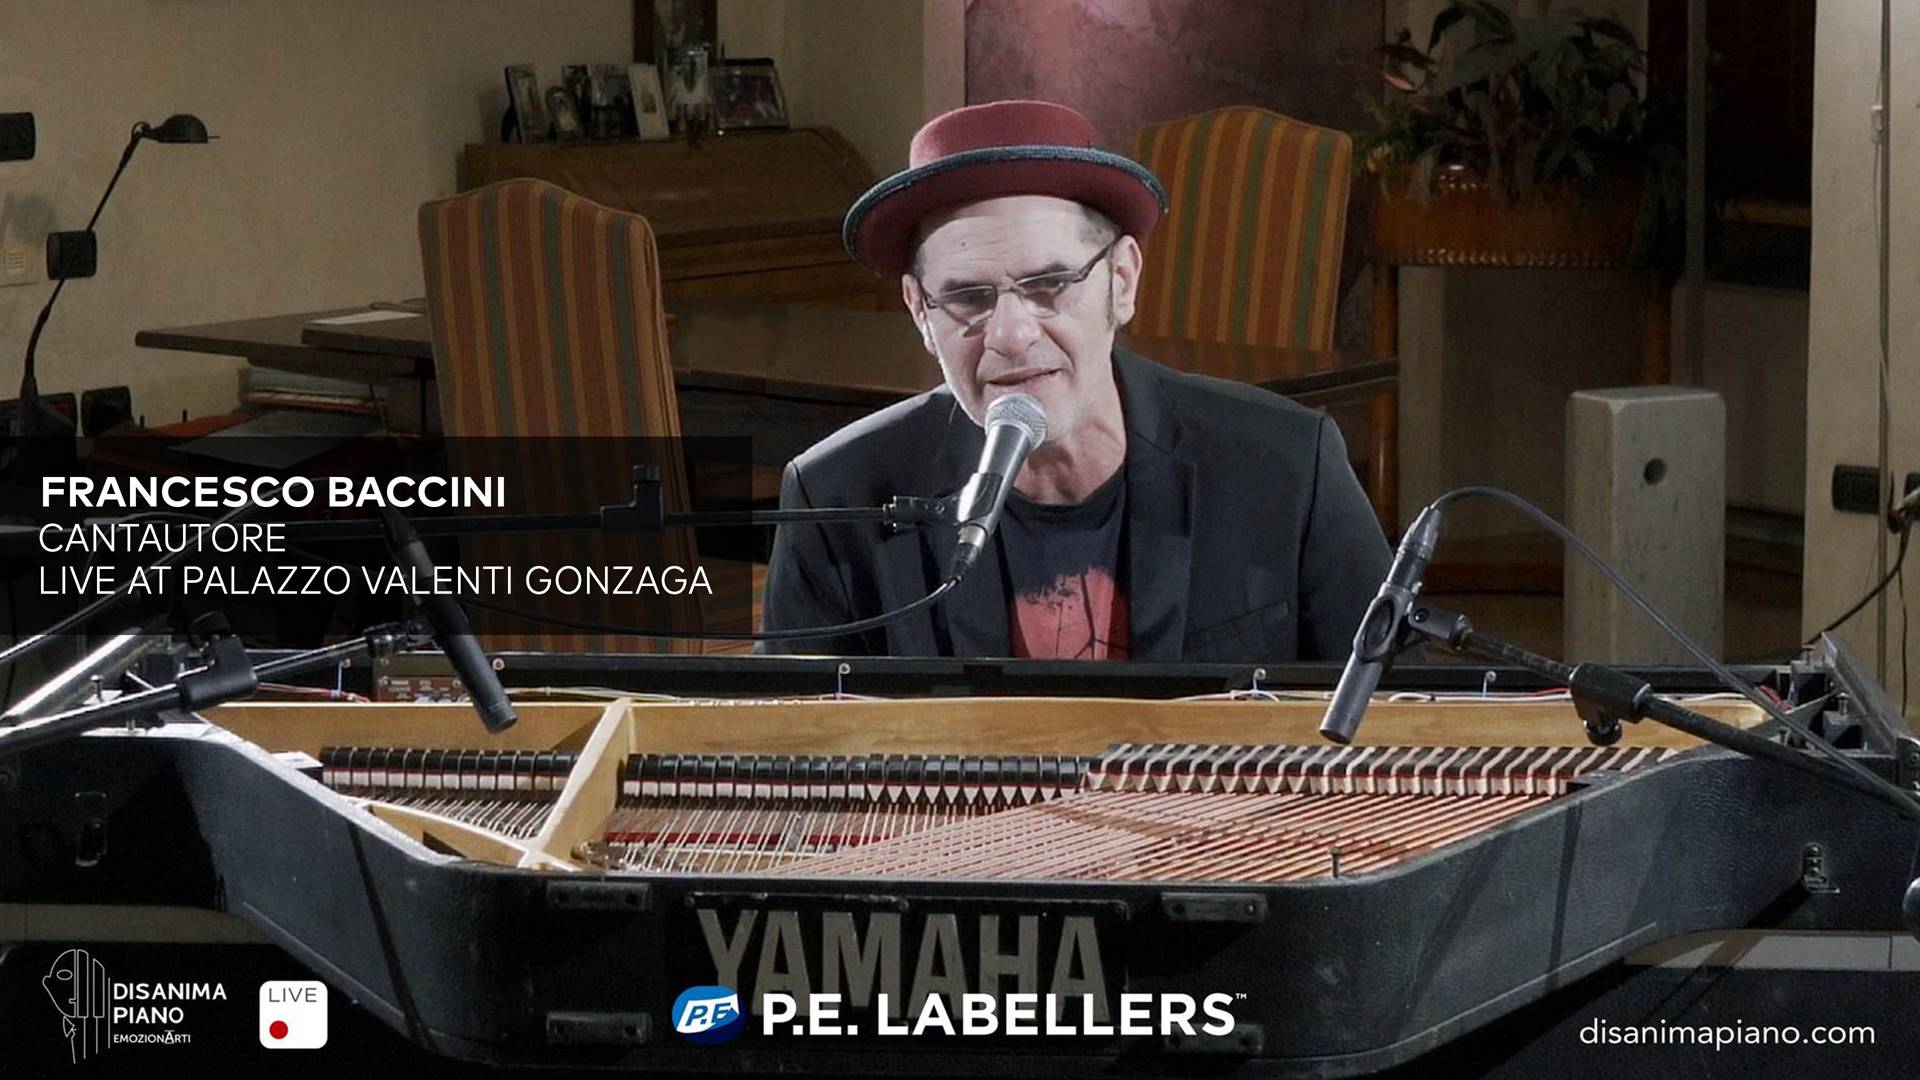 Disanima Piano Francesco Baccini Live at Palazzo Valenti Gonzaga